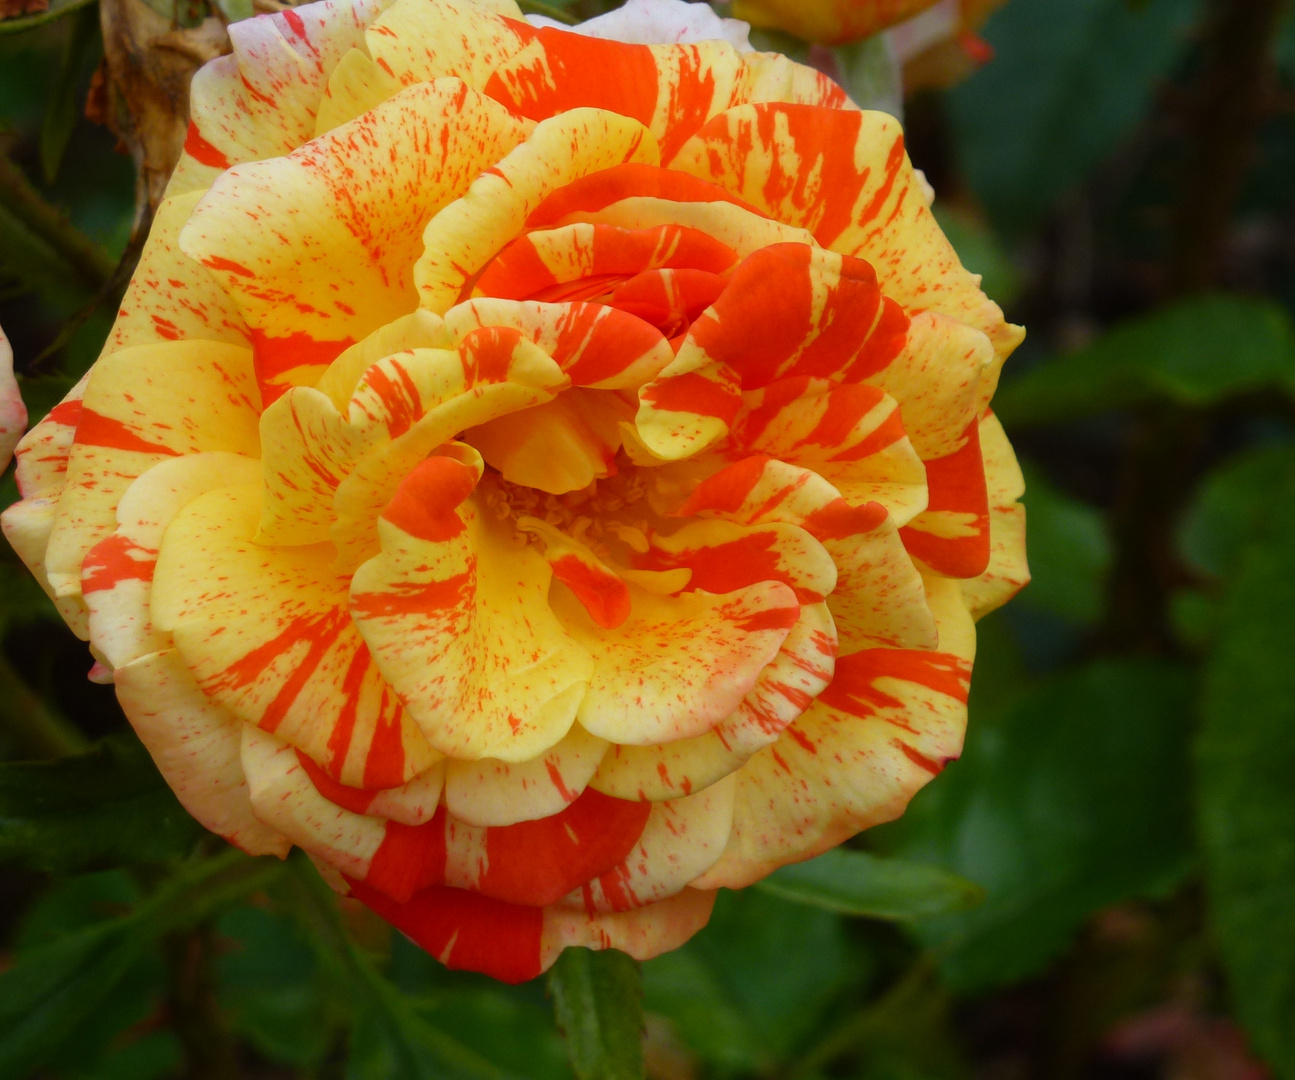 Rose gelb-orange